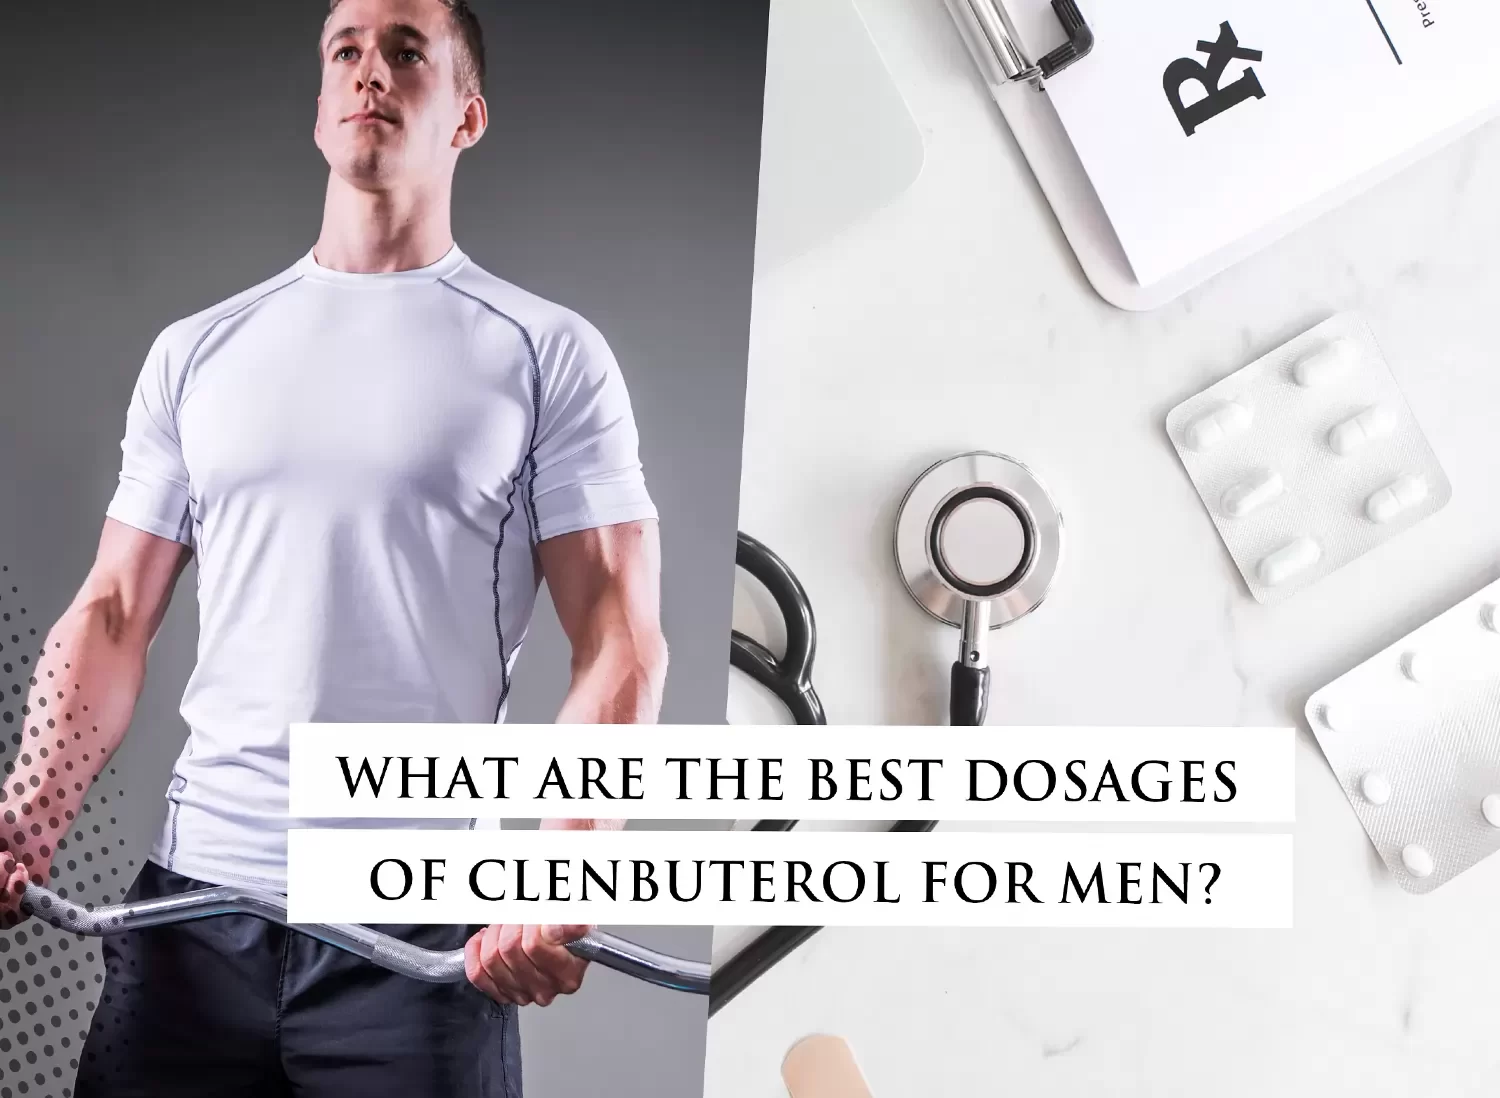 Dosages of Clenbuterol for men